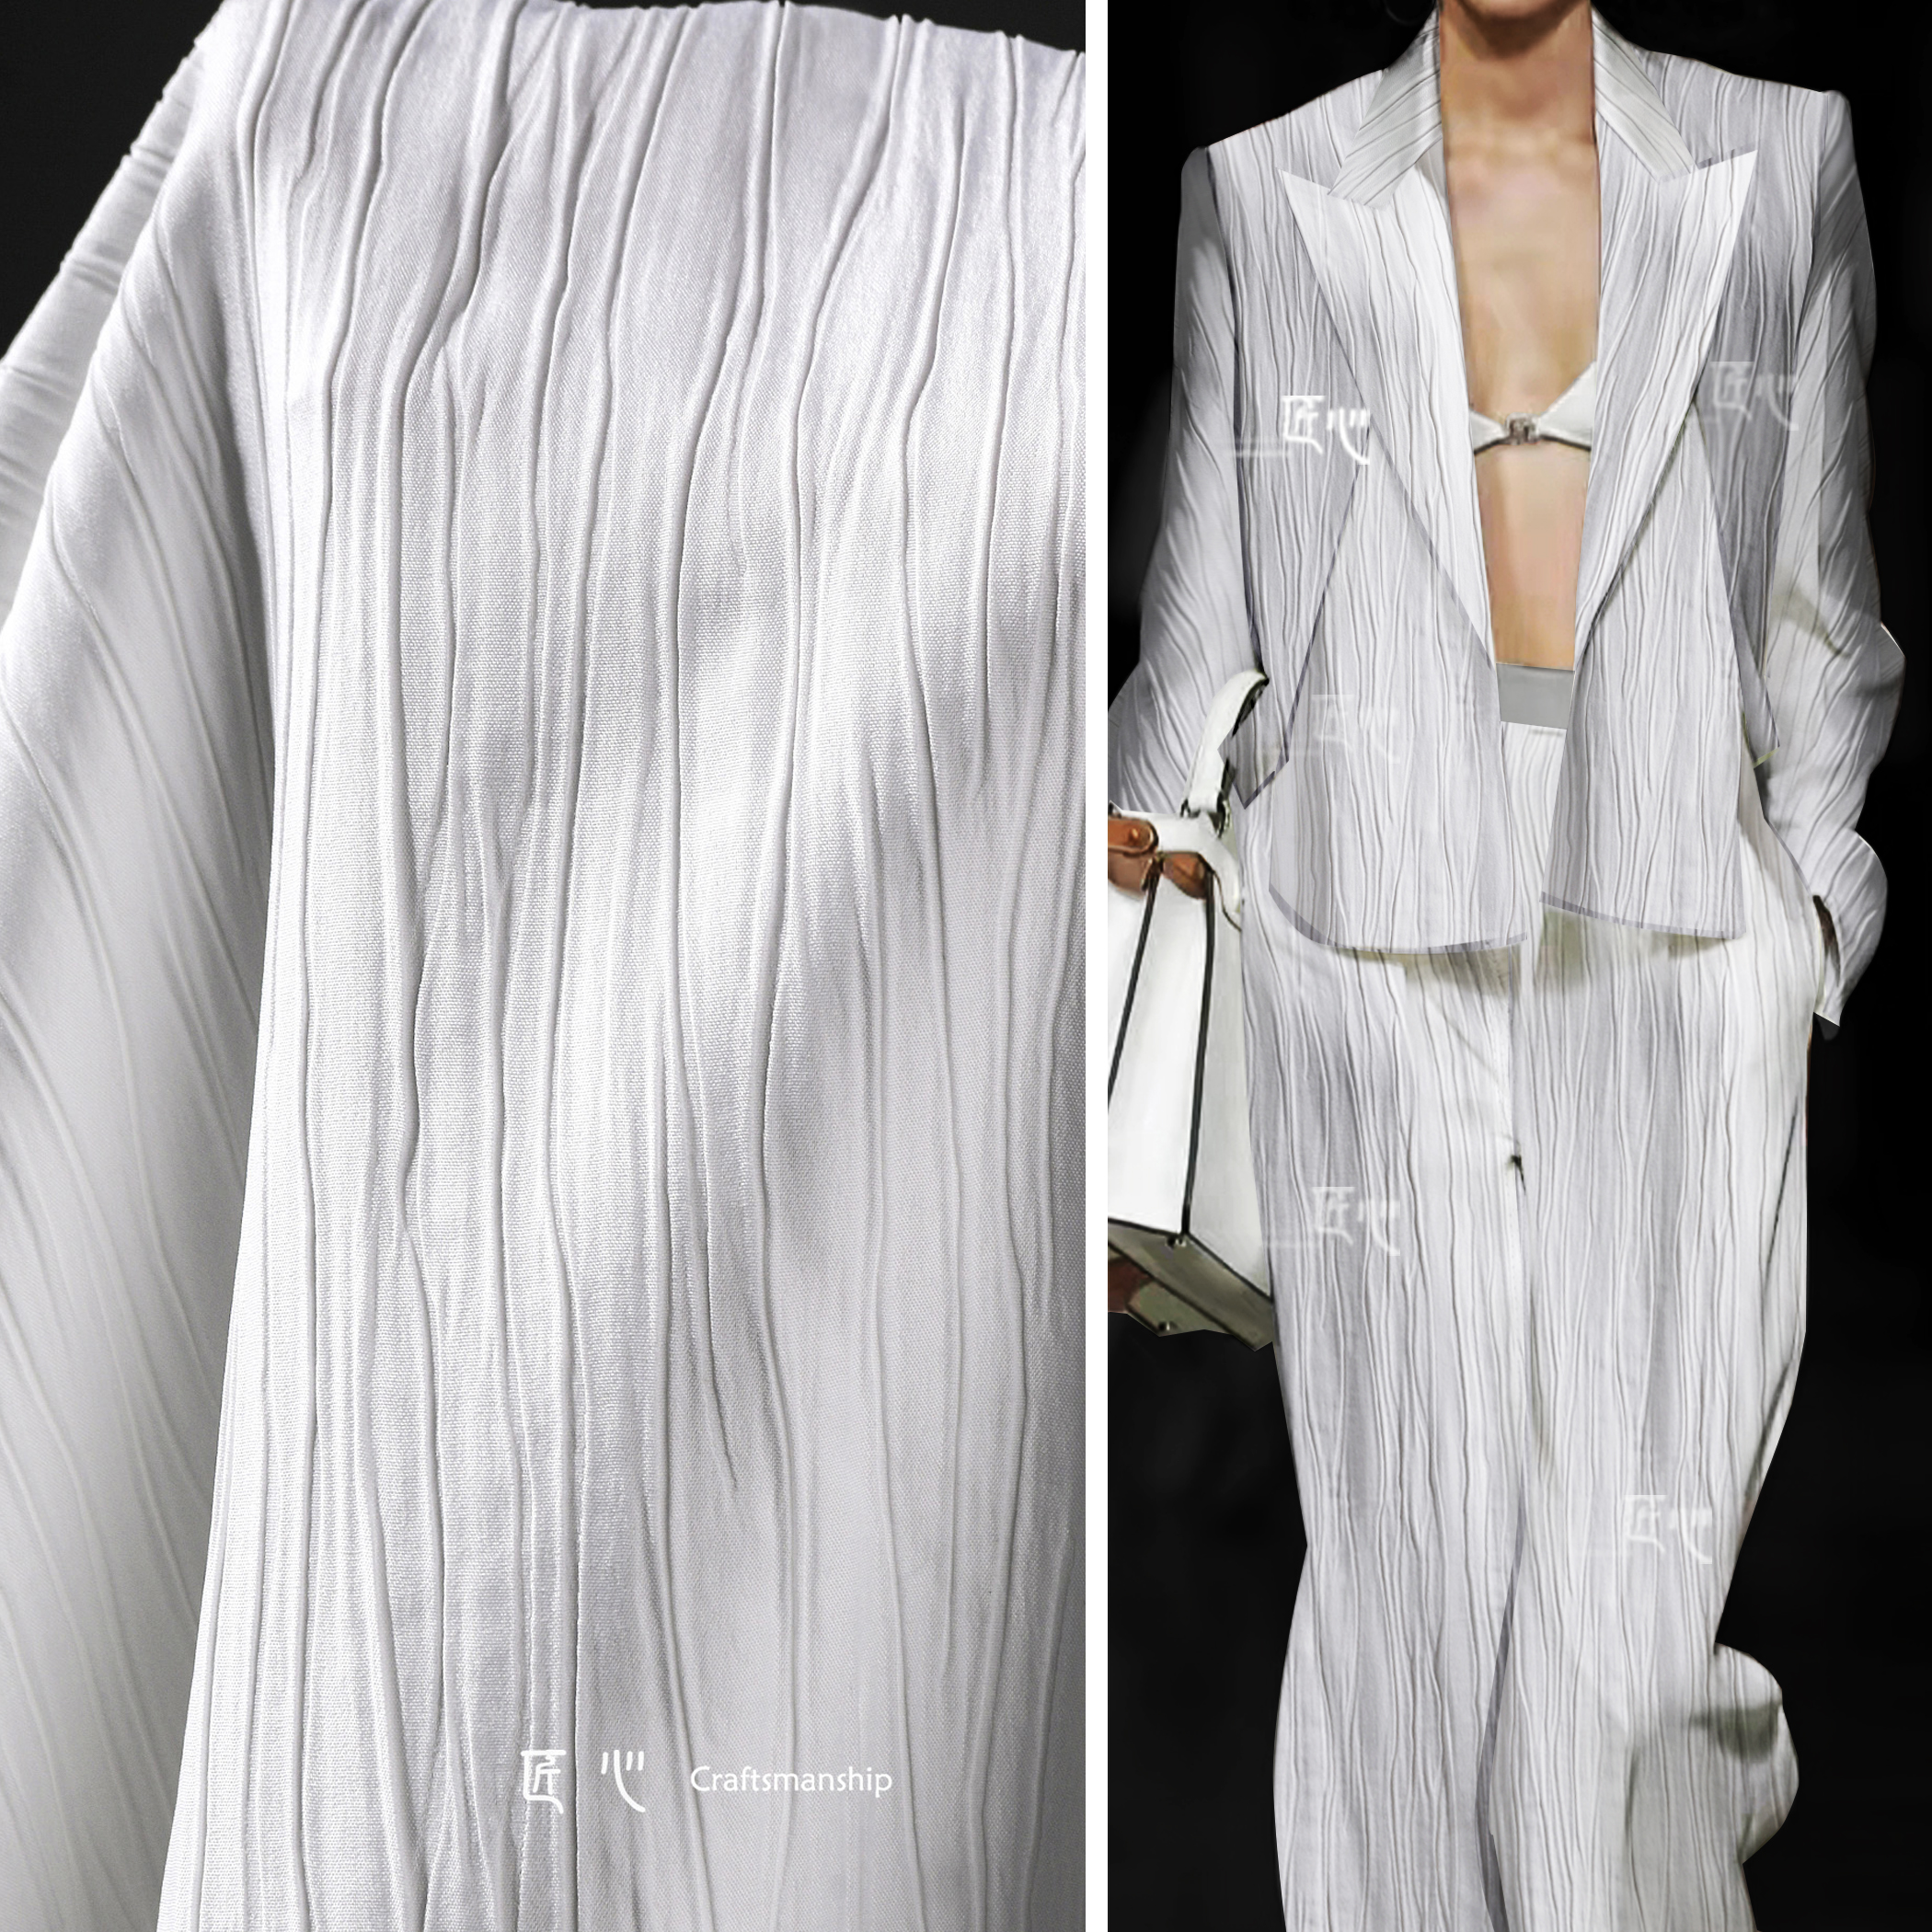 白色不规则线条压褶肌理布 立体再造褶皱西装衬衫裙服装设计面料